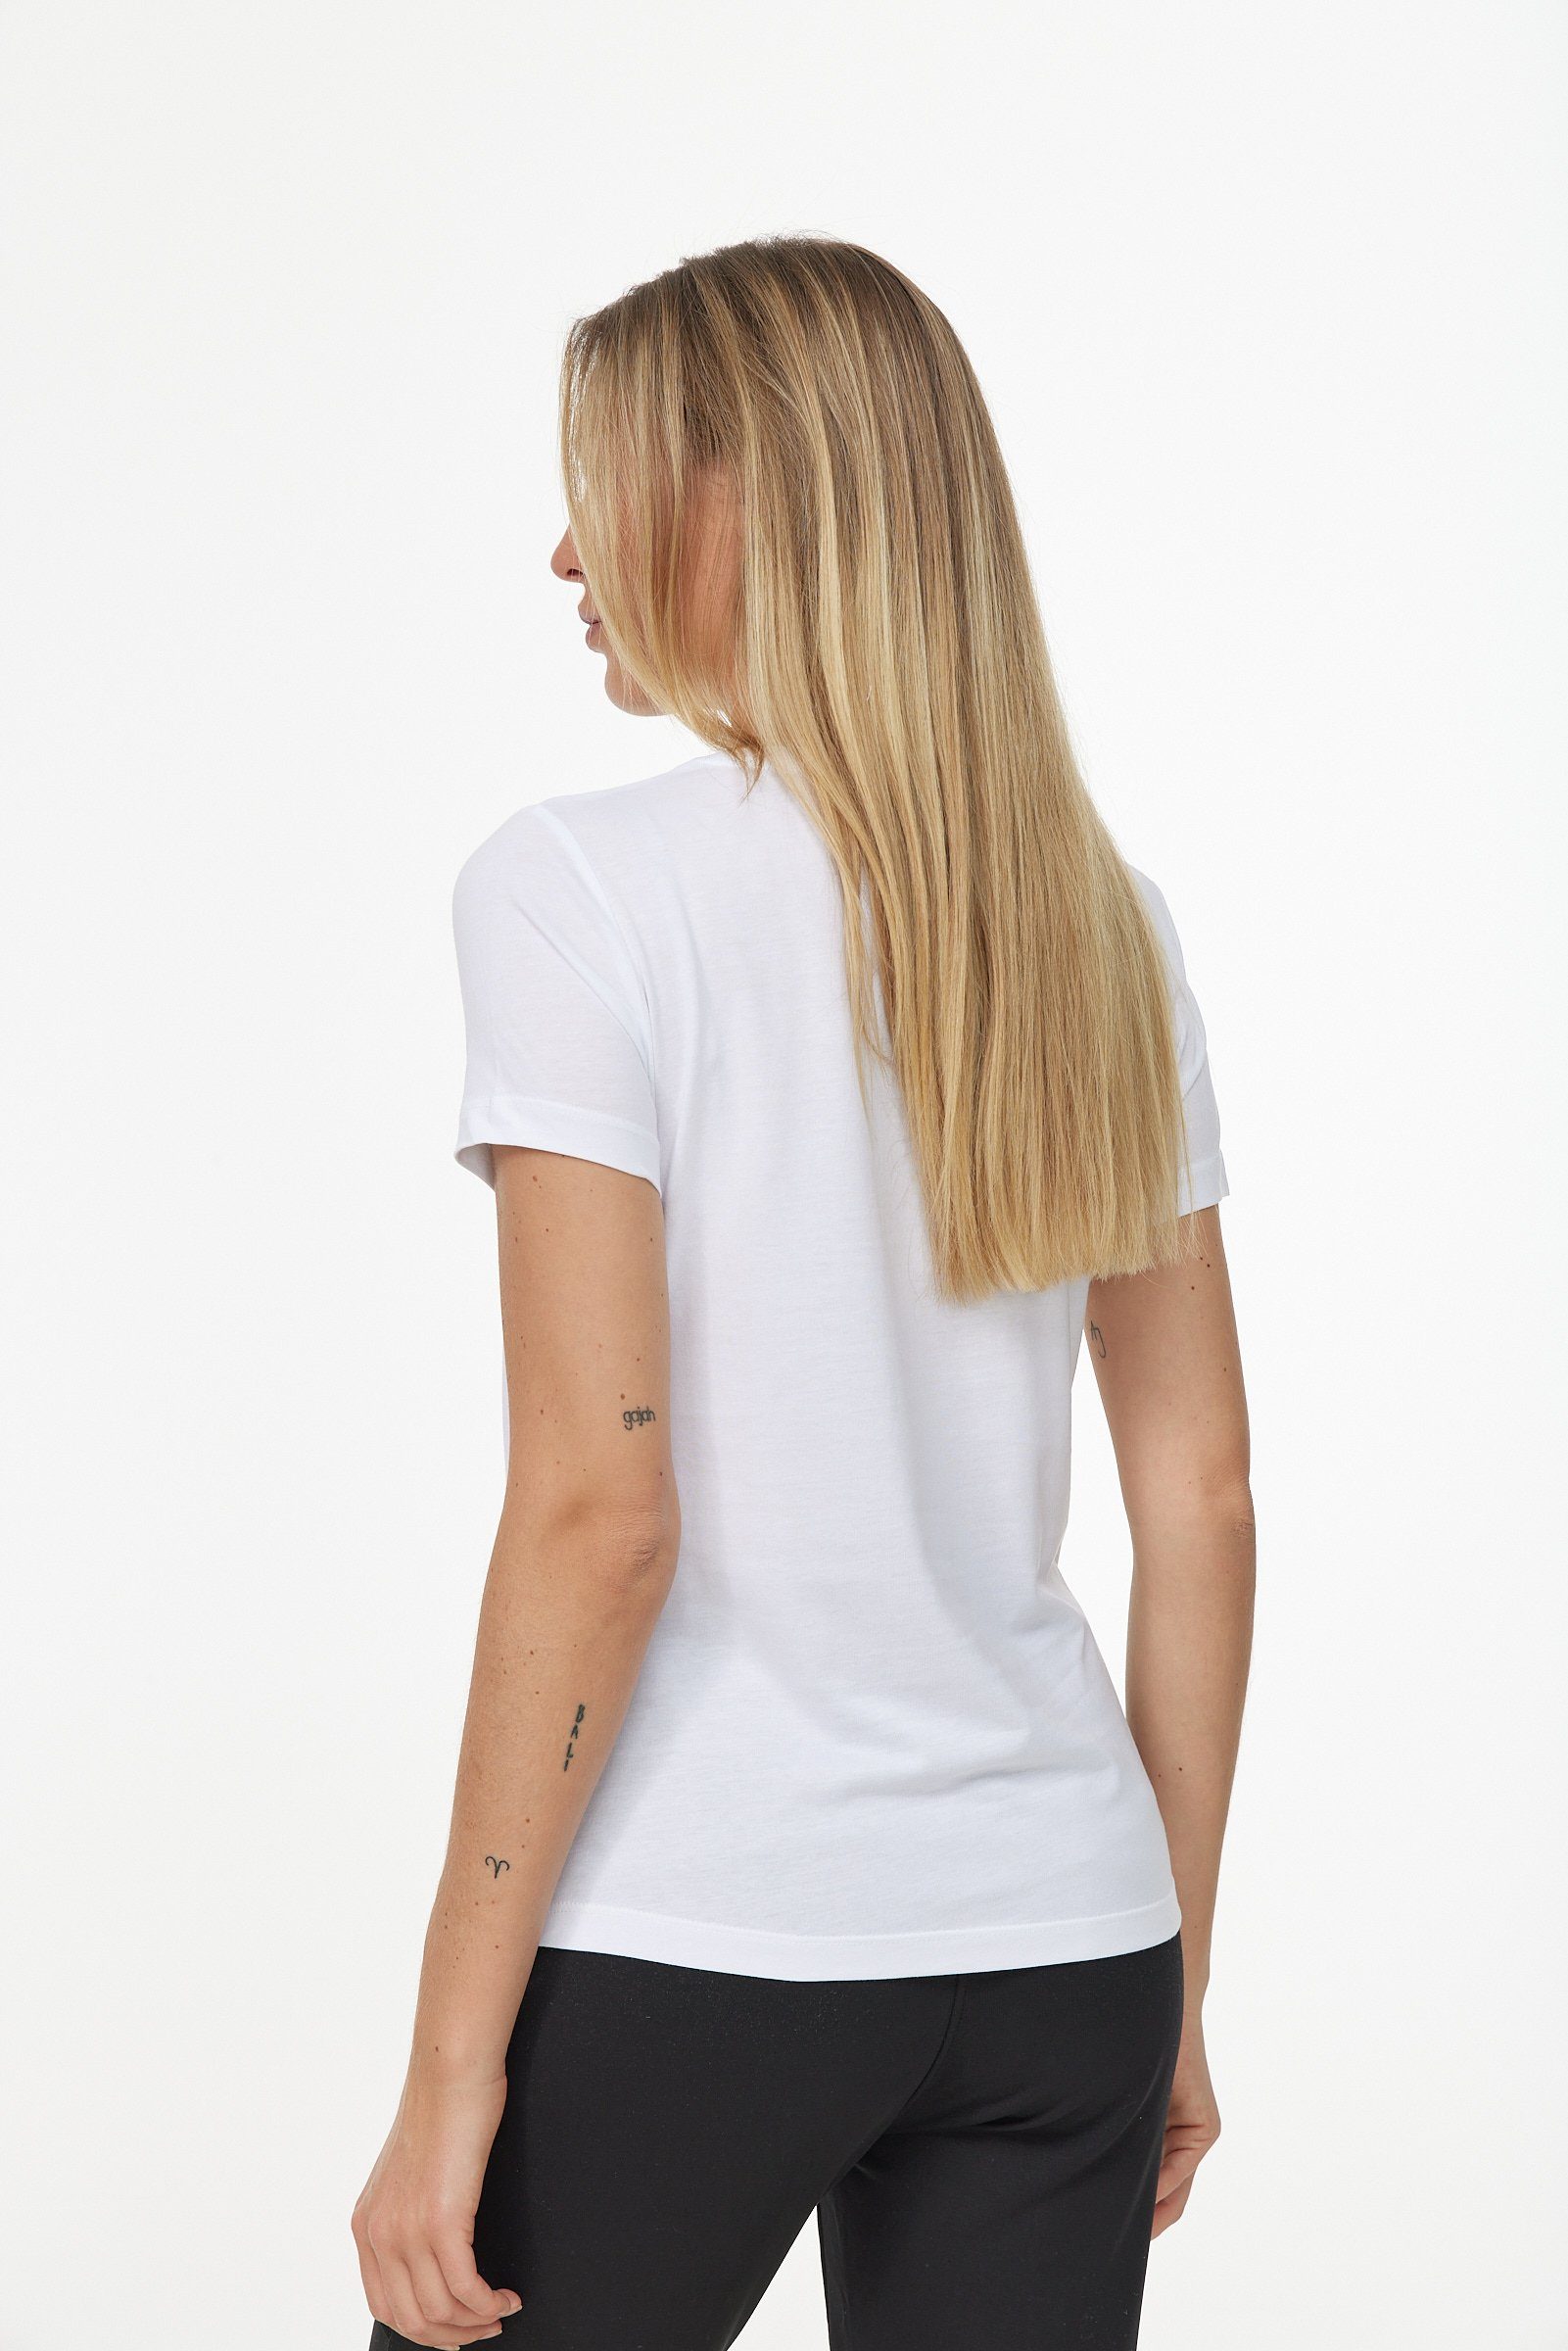 schlichtem weiß-schwarz T-Shirt in Design Decay